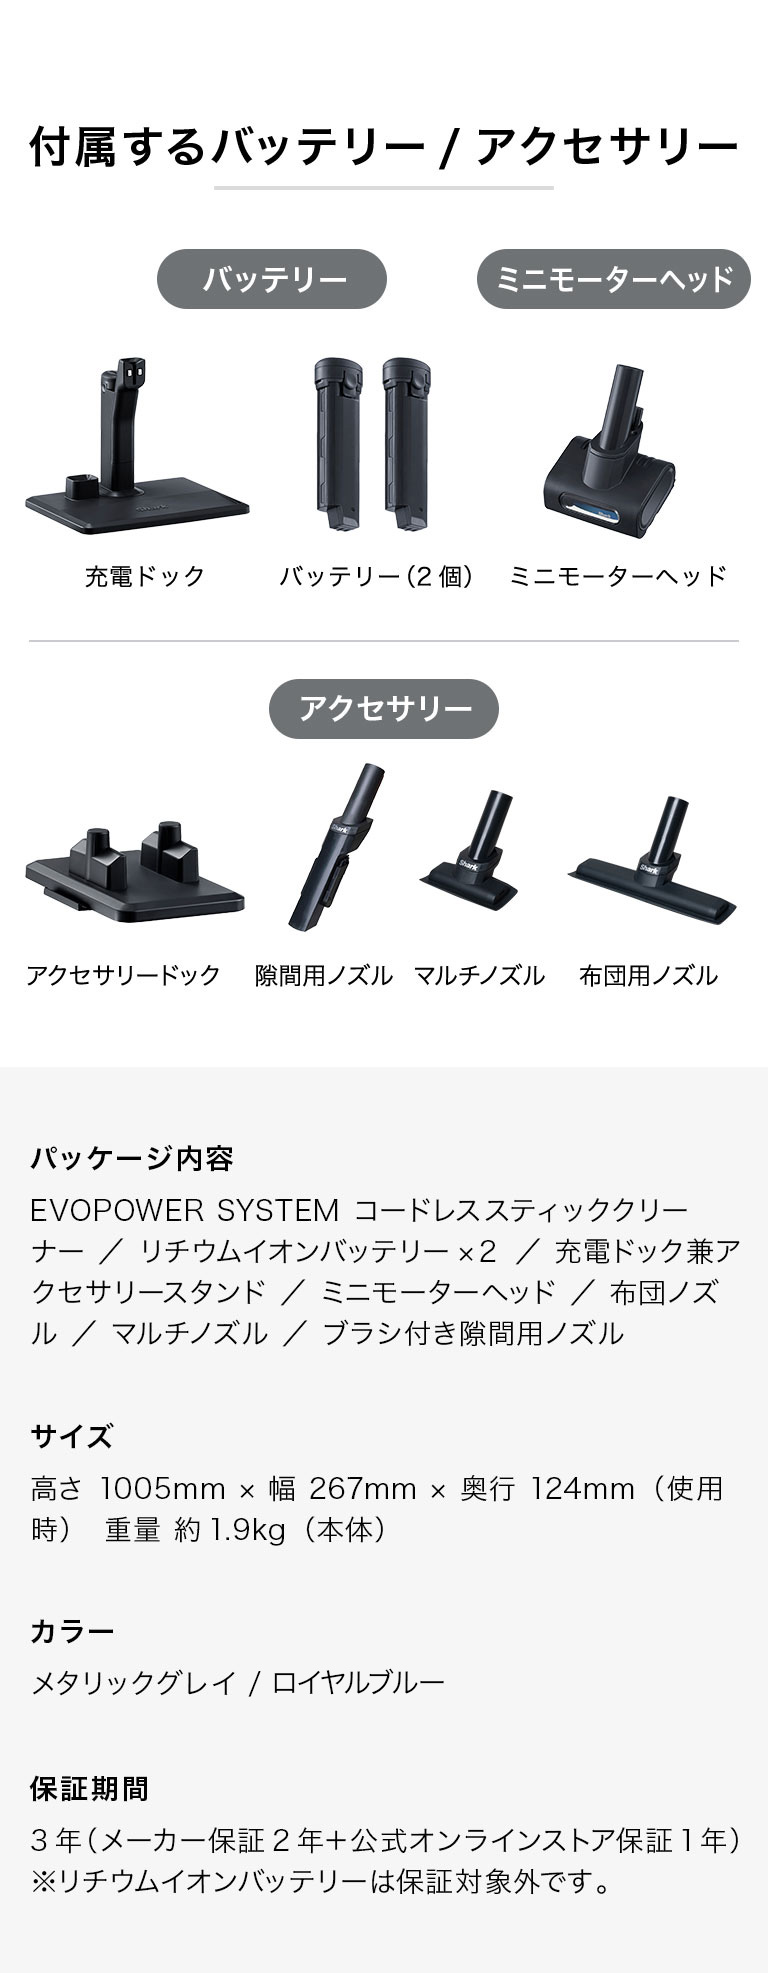 【新品未使用】シャーク 掃除機 EVOPOWER CS401J アクセサリ 付属